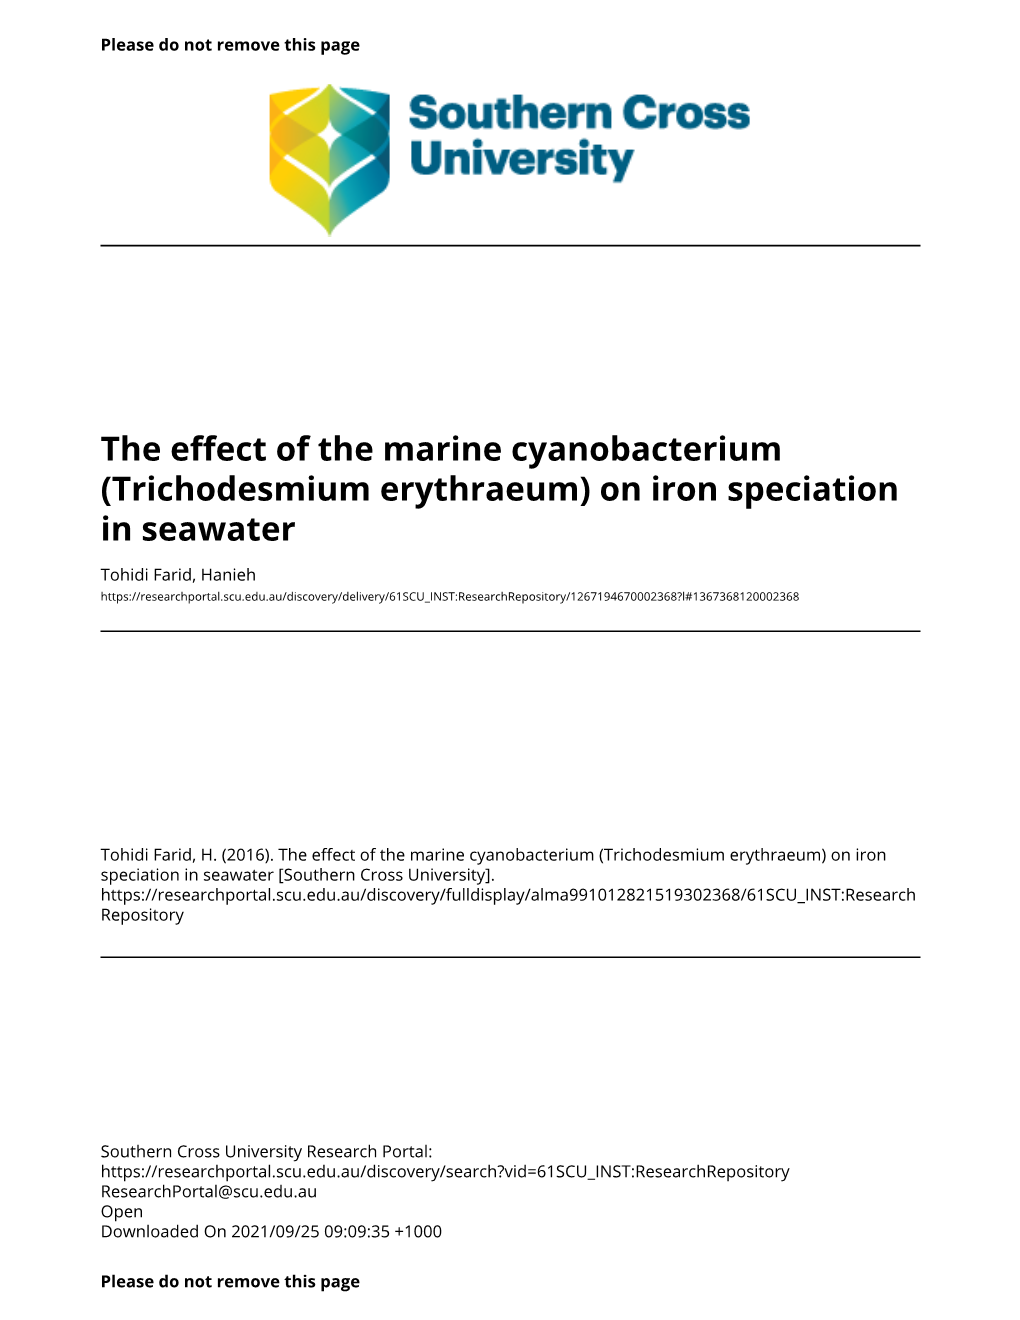 Trichodesmium Erythraeum) on Iron Speciation in Seawater